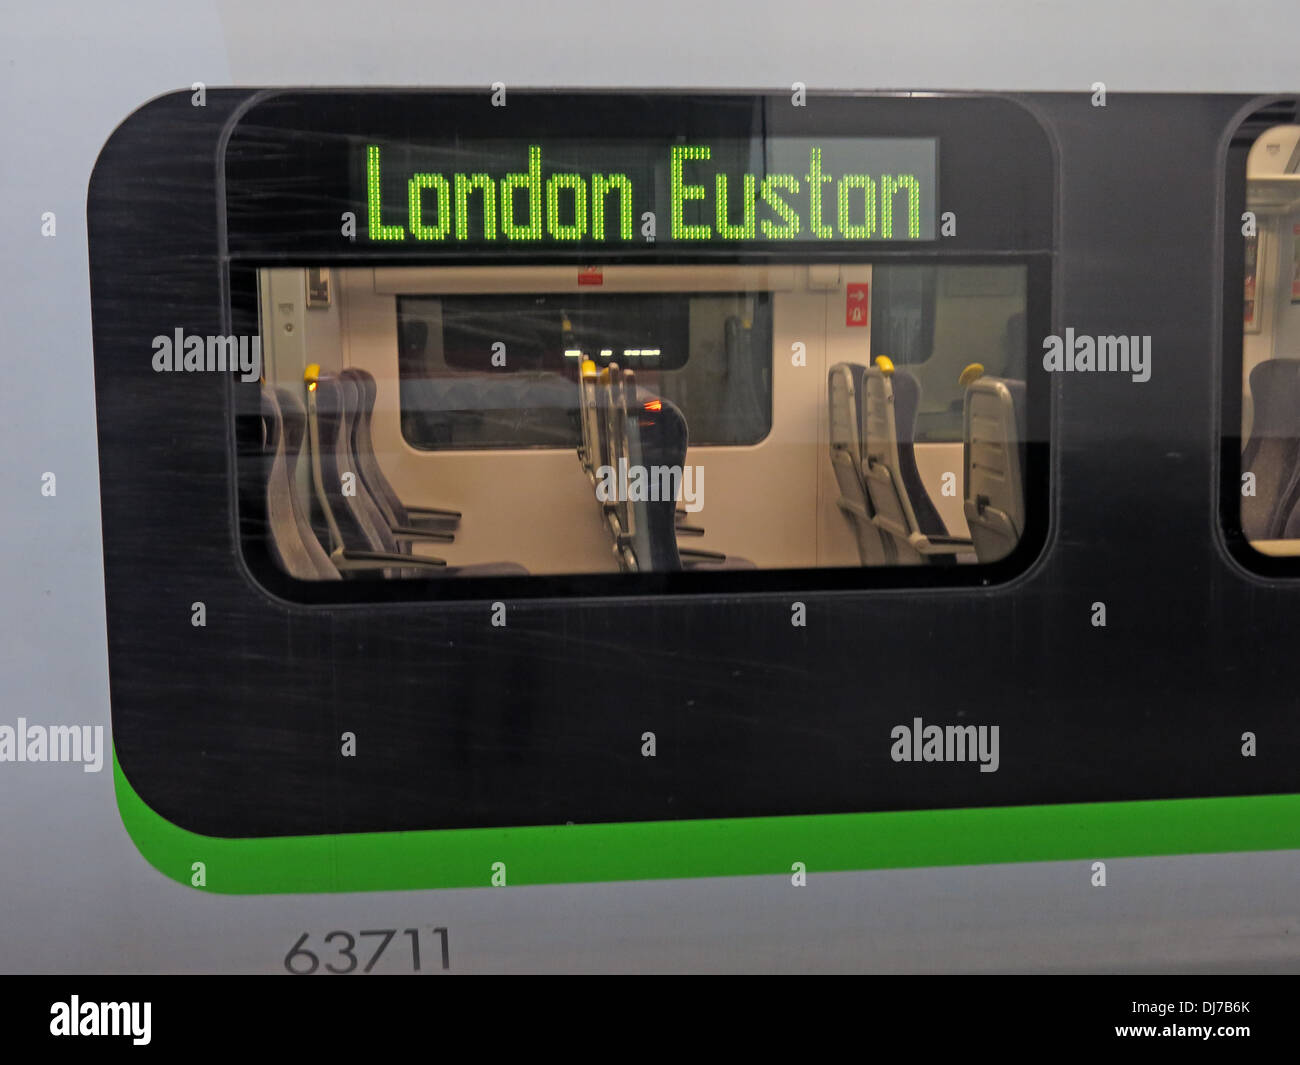 London Midland Railway Coach 63711, at London Euston train station England UK Stock Photo